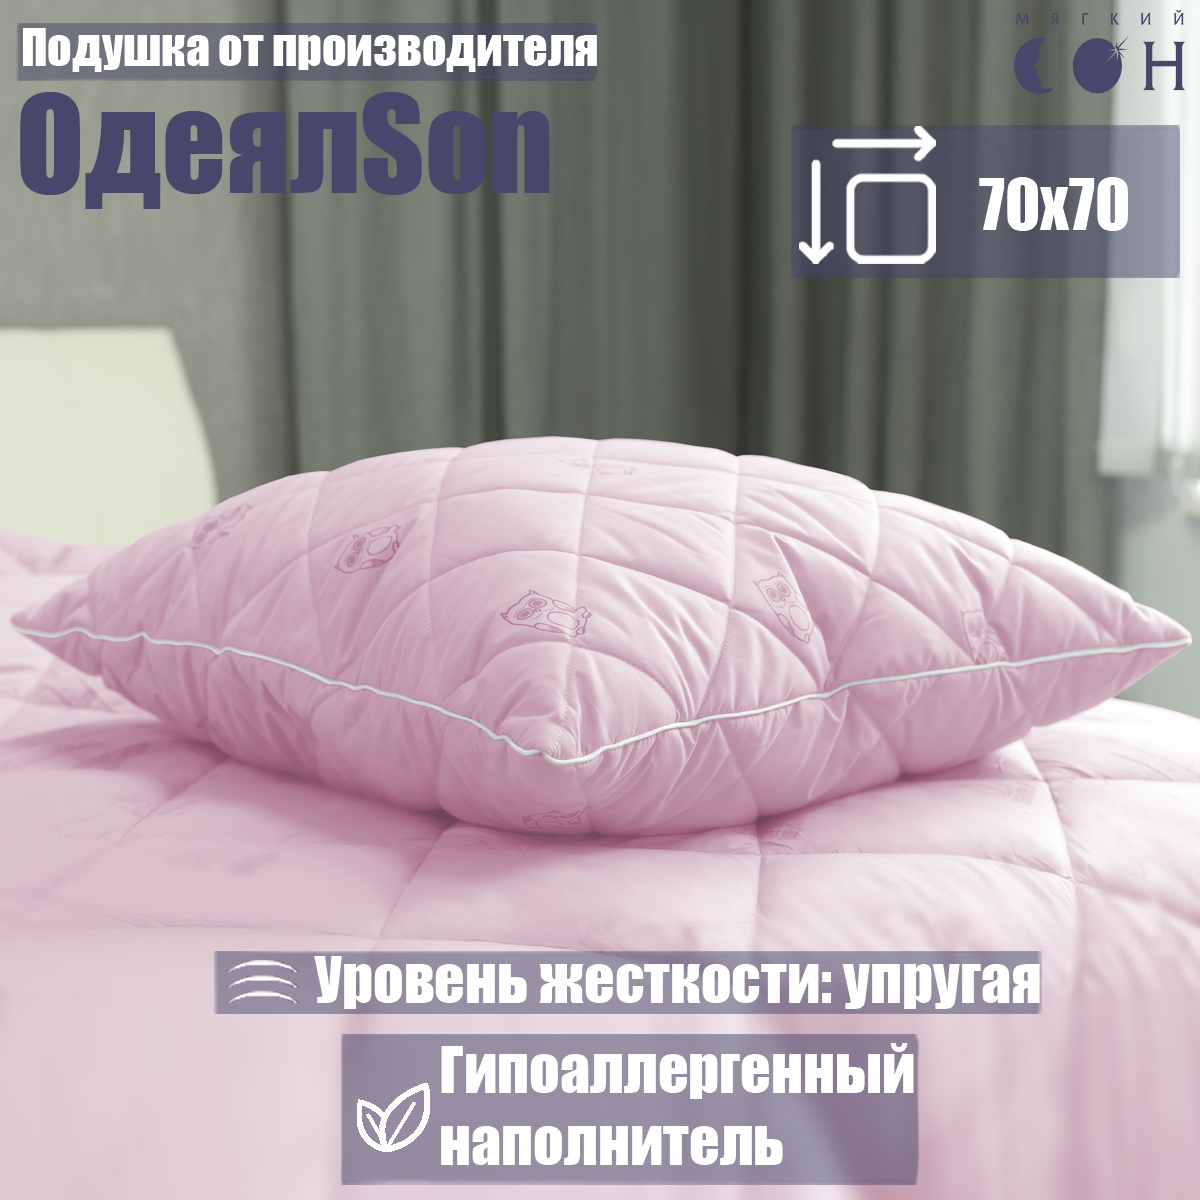 Подушка Мягкий сон одеялсон 70x70 см - фото 1